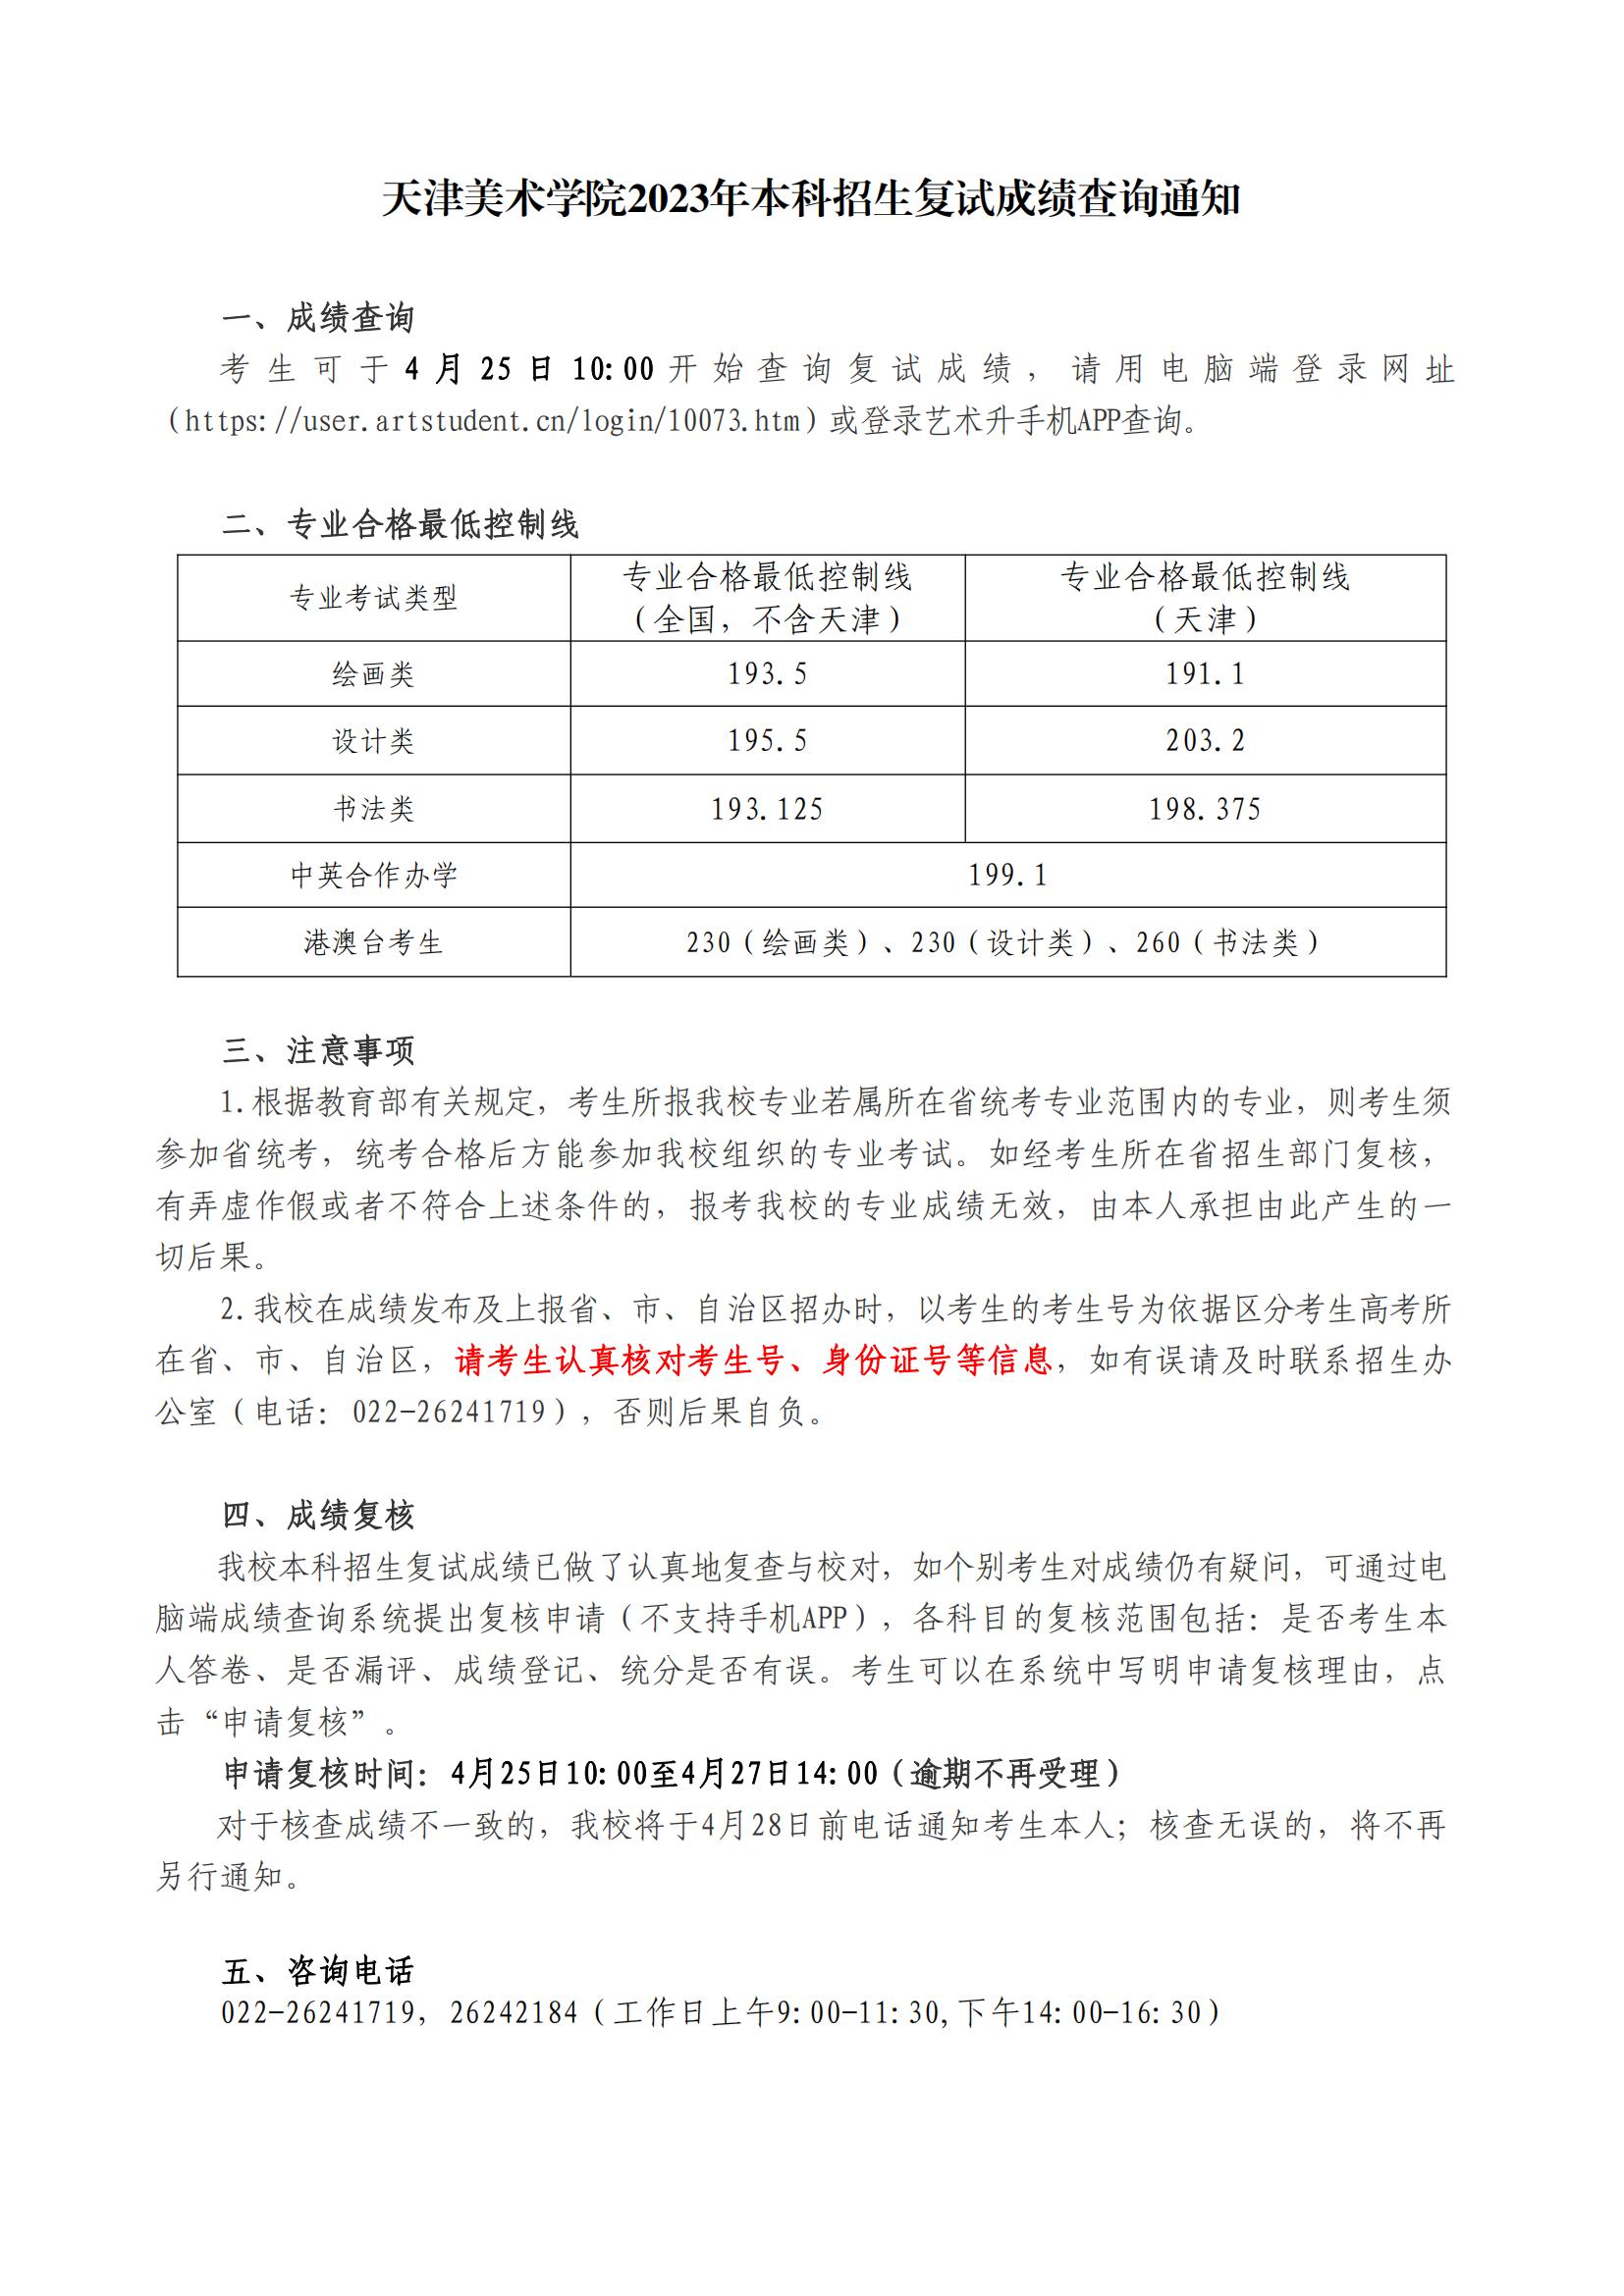 关于2015年天津美术学院本科招生考试成绩查询的通告_00.jpg